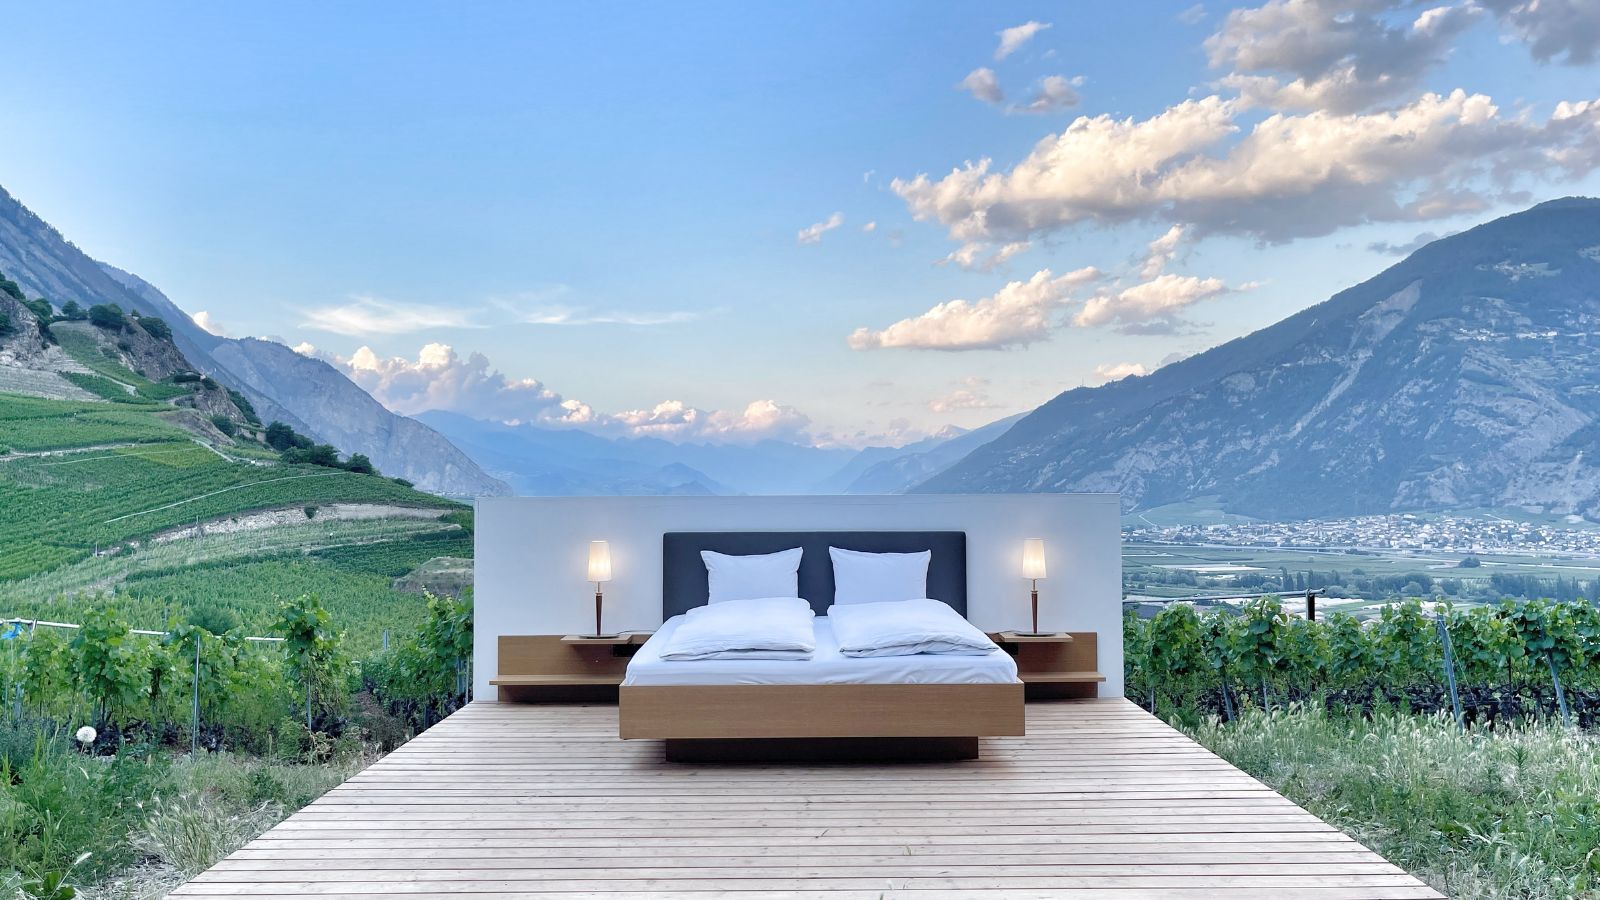 Una suite al aire libre en plenos Alpes suizos